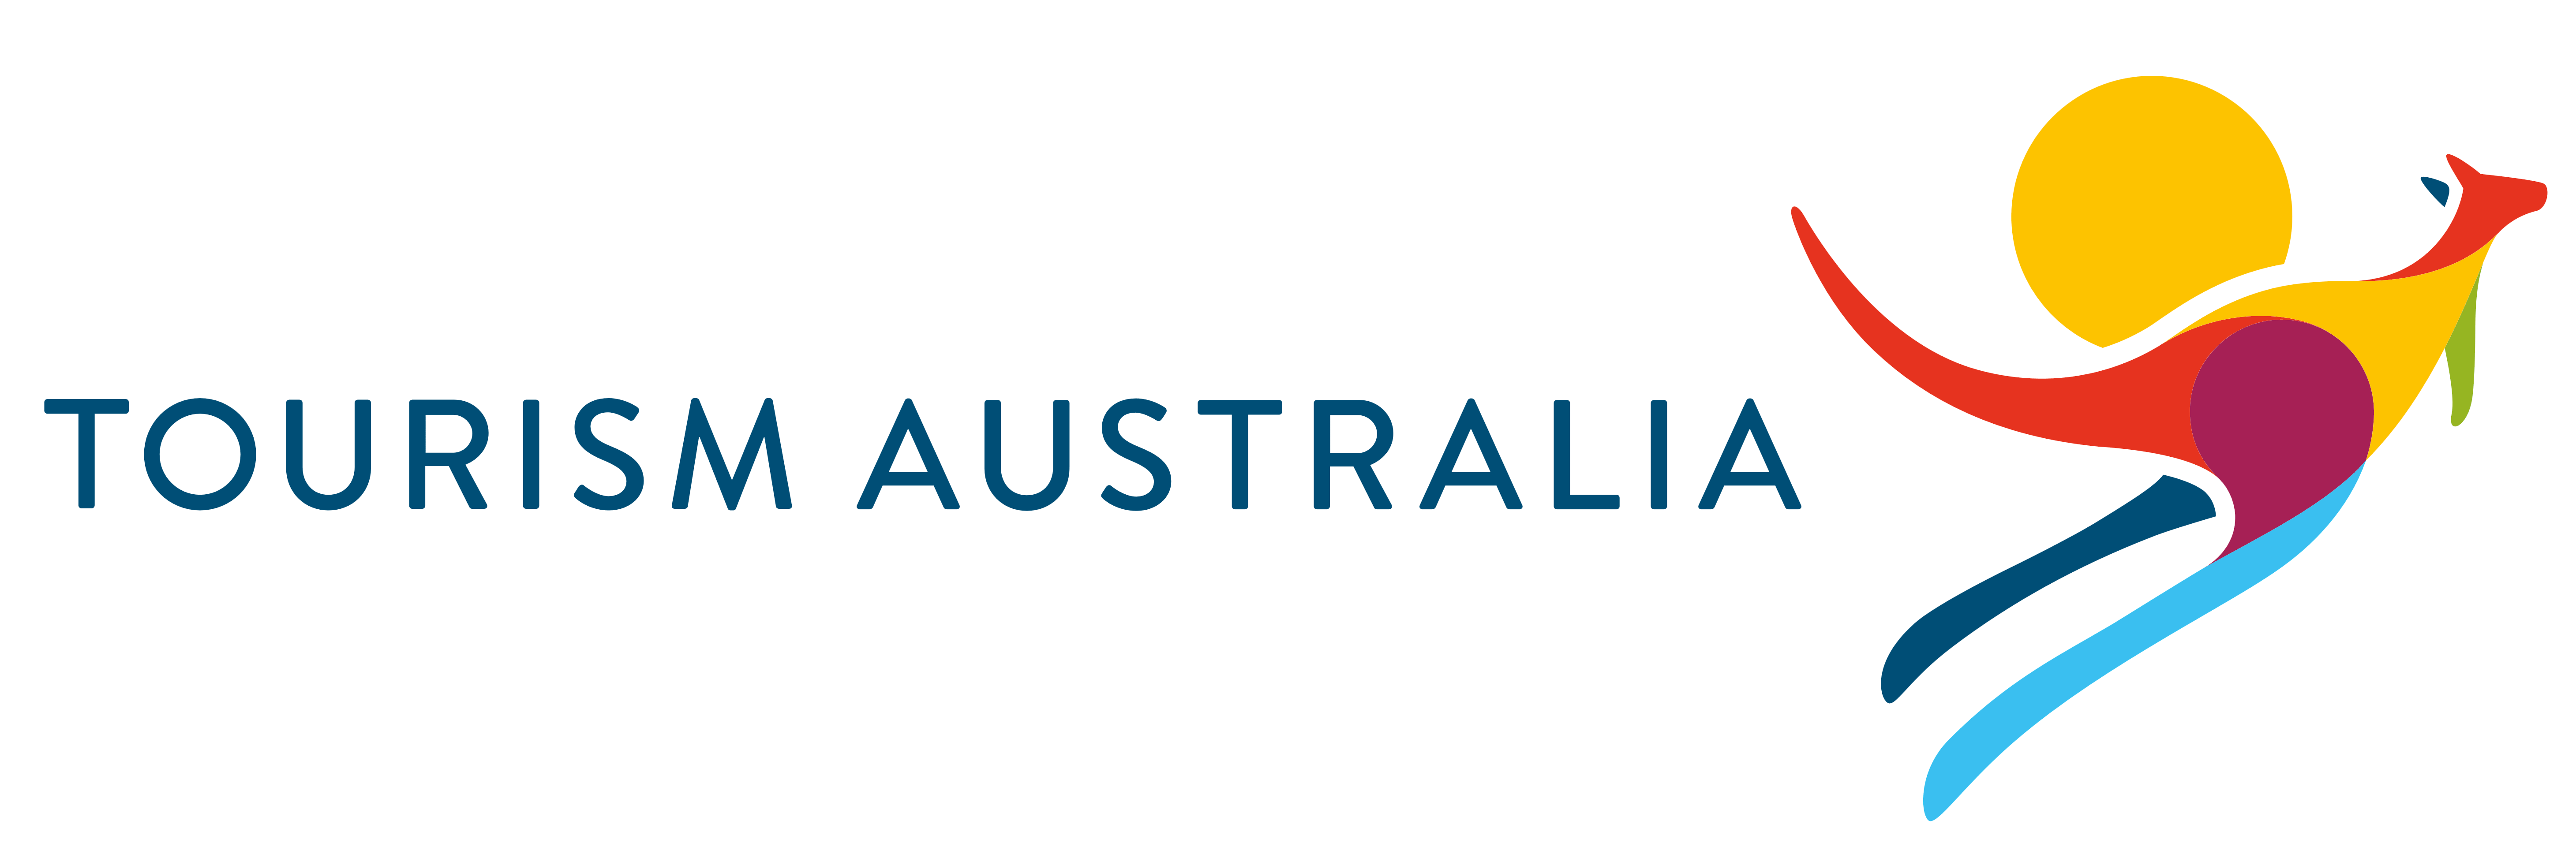 Tourism Australia Logo - Tourism Australia – Logos Download